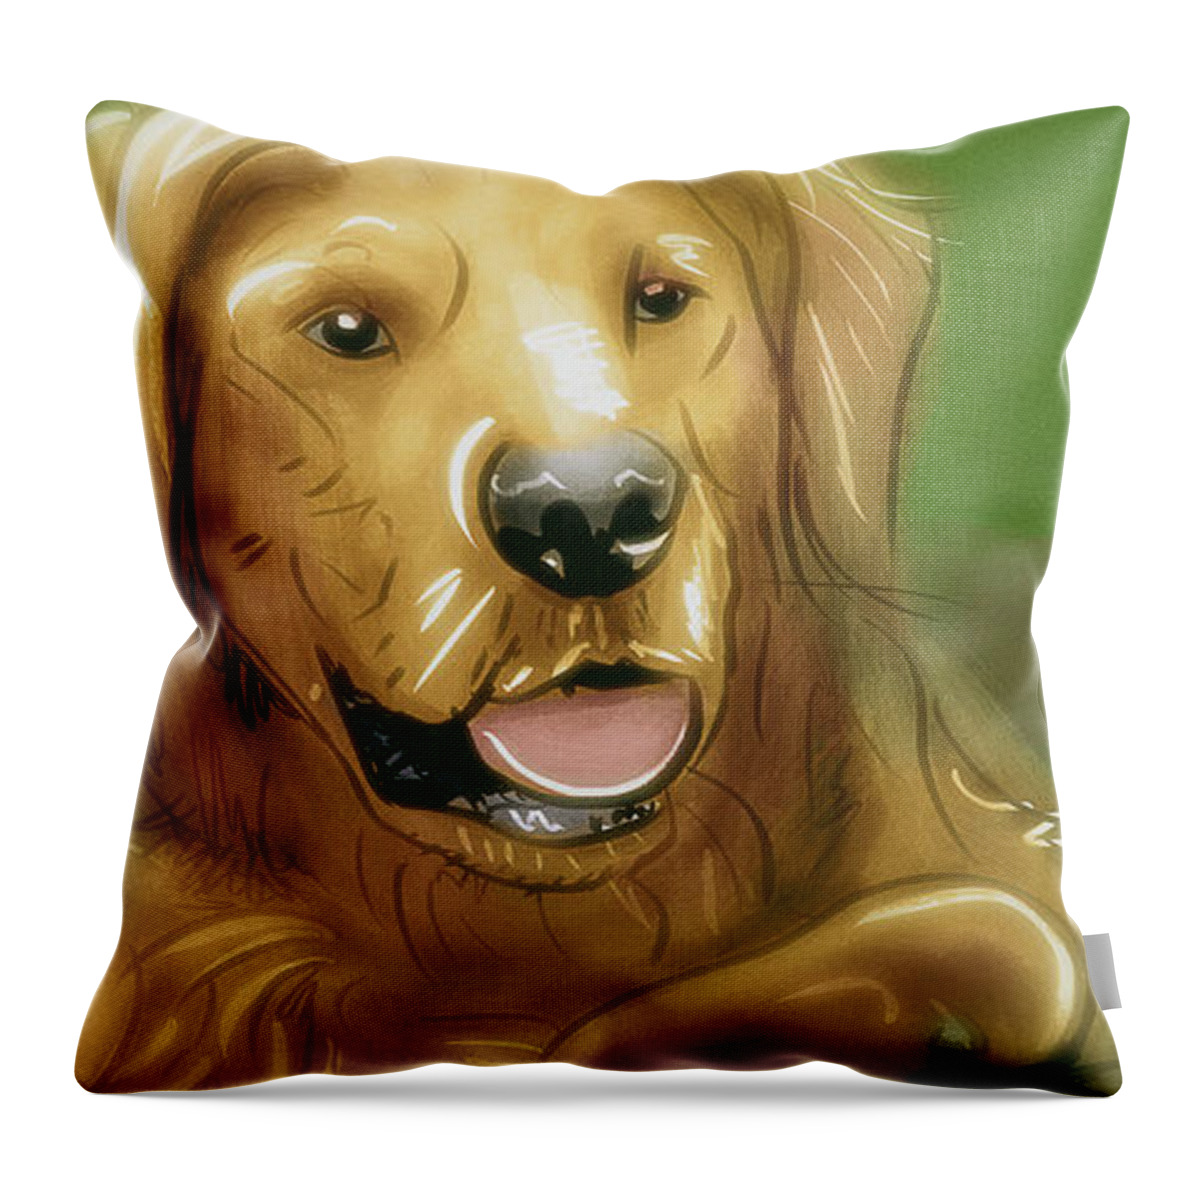 Dogs Throw Pillow featuring the digital art Art - A Golden Friend by Matthias Zegveld